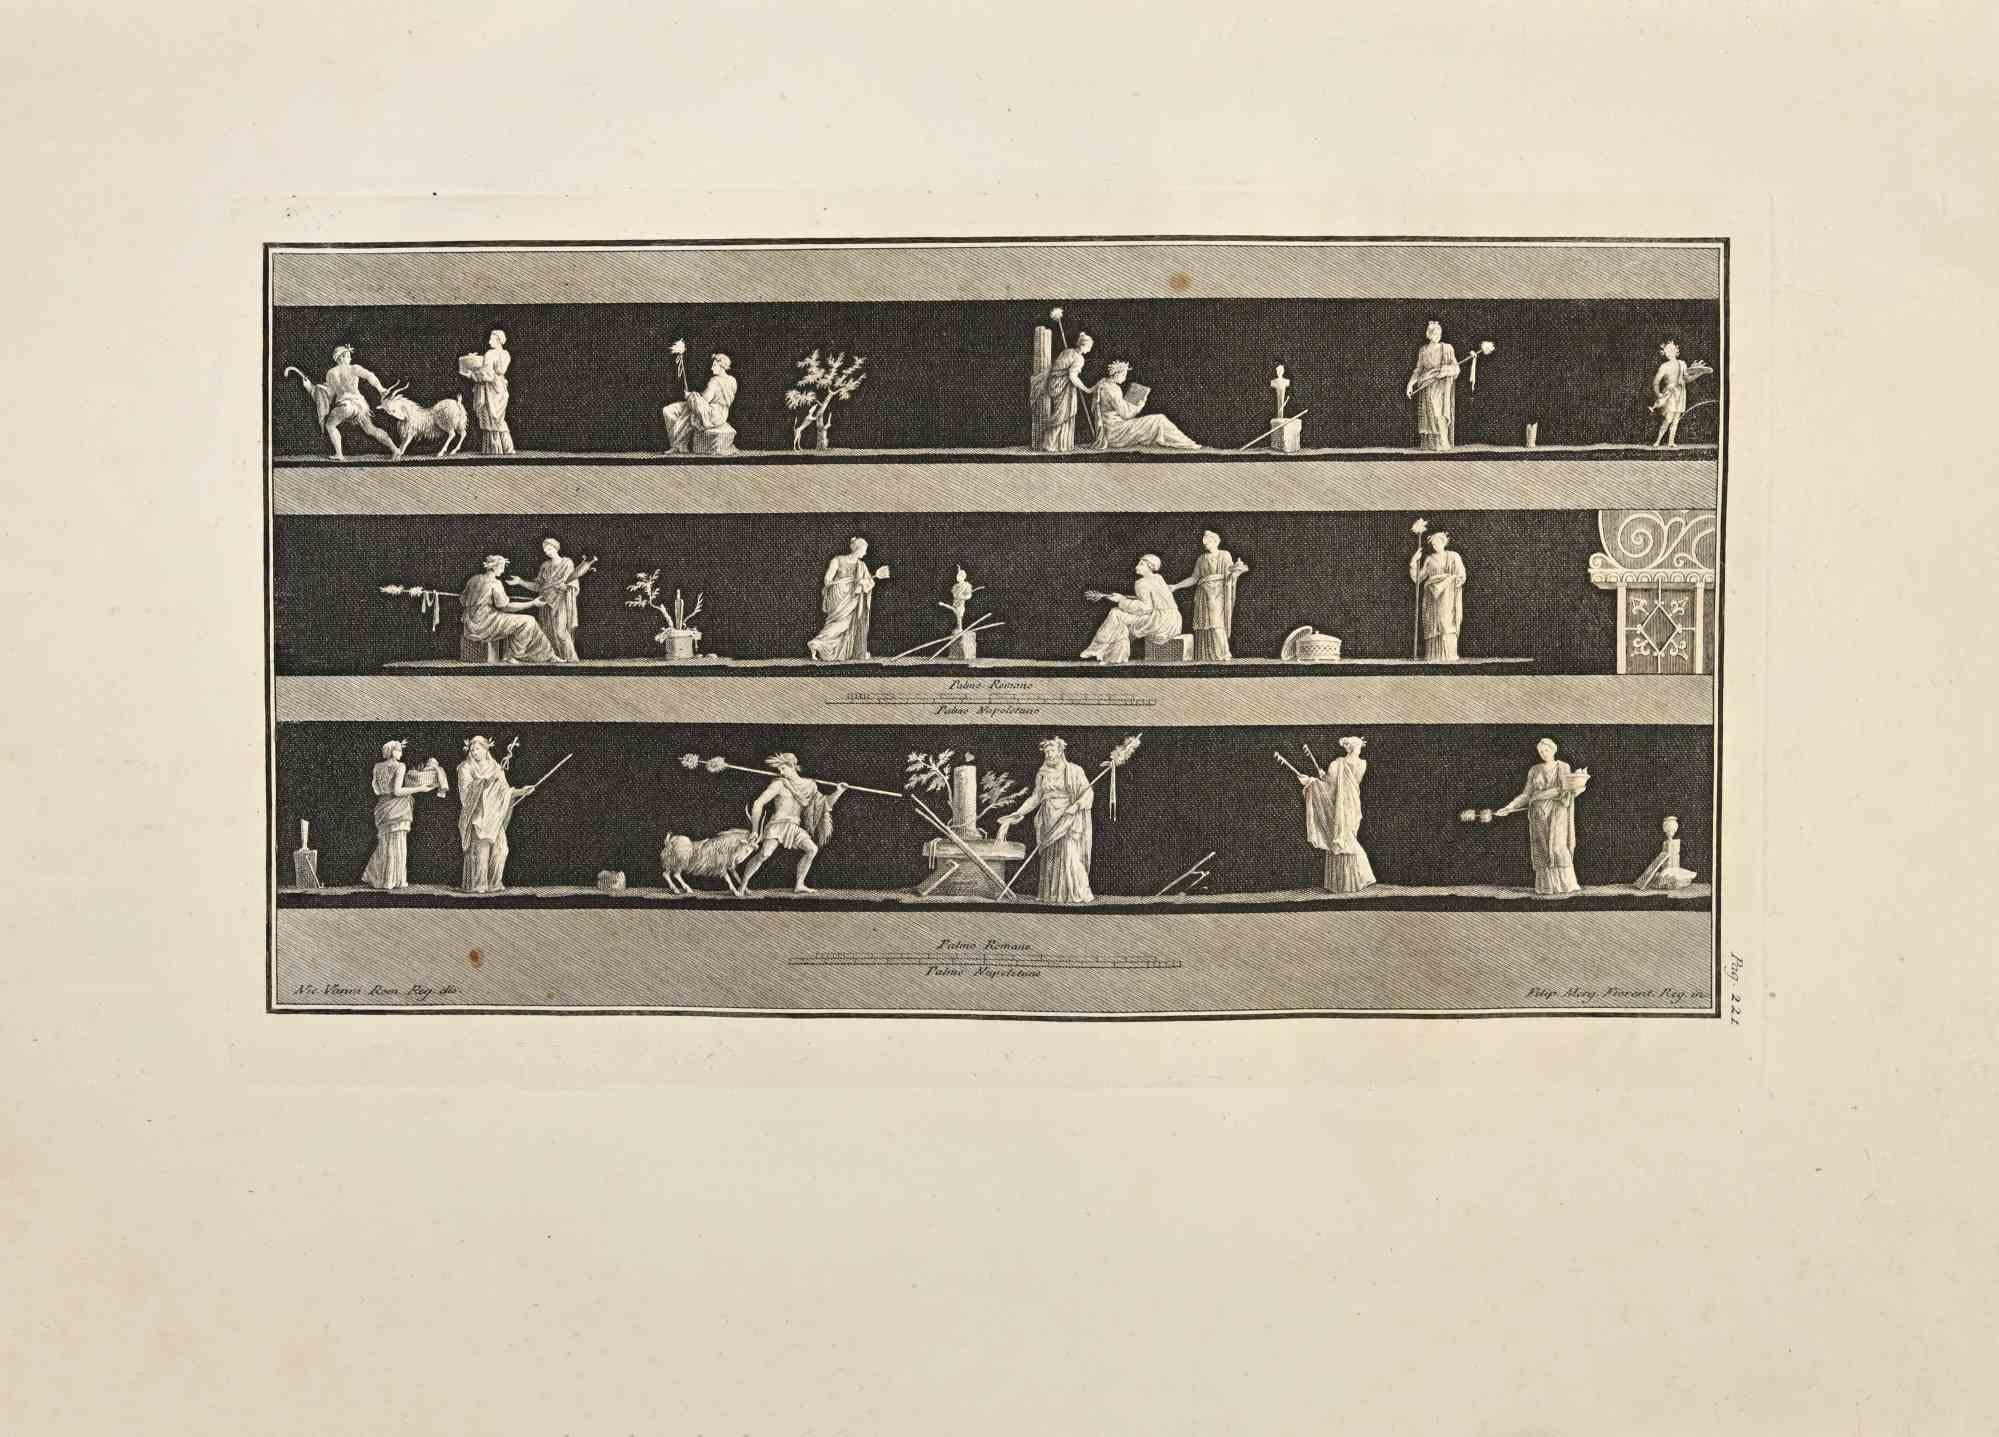 Fête de Bacchus "Bacchanalia" des "Antiquités d'Herculanum" est une gravure sur papier réalisée par Filippo Morghen au 18ème siècle.

Signé sur la plaque.

Bon état avec quelques pliures.

La gravure appartient à la suite d'estampes "Antiquités